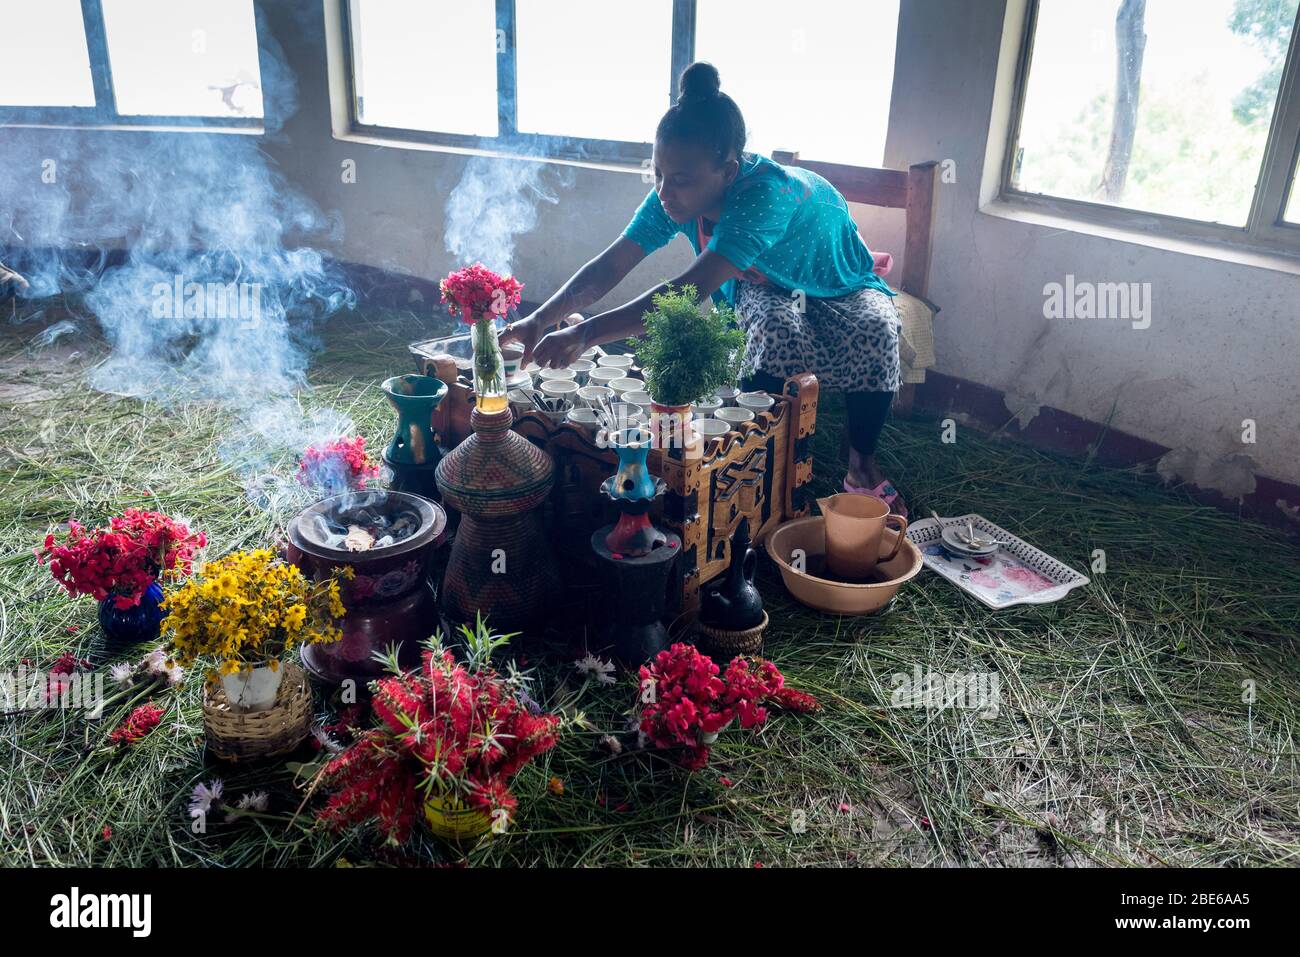 Una giovane donna prepara il caffè per gli ospiti del ristorante, mentre l'incenso brucia tra i fiori, Addis Abeba, Etiopia. Foto Stock